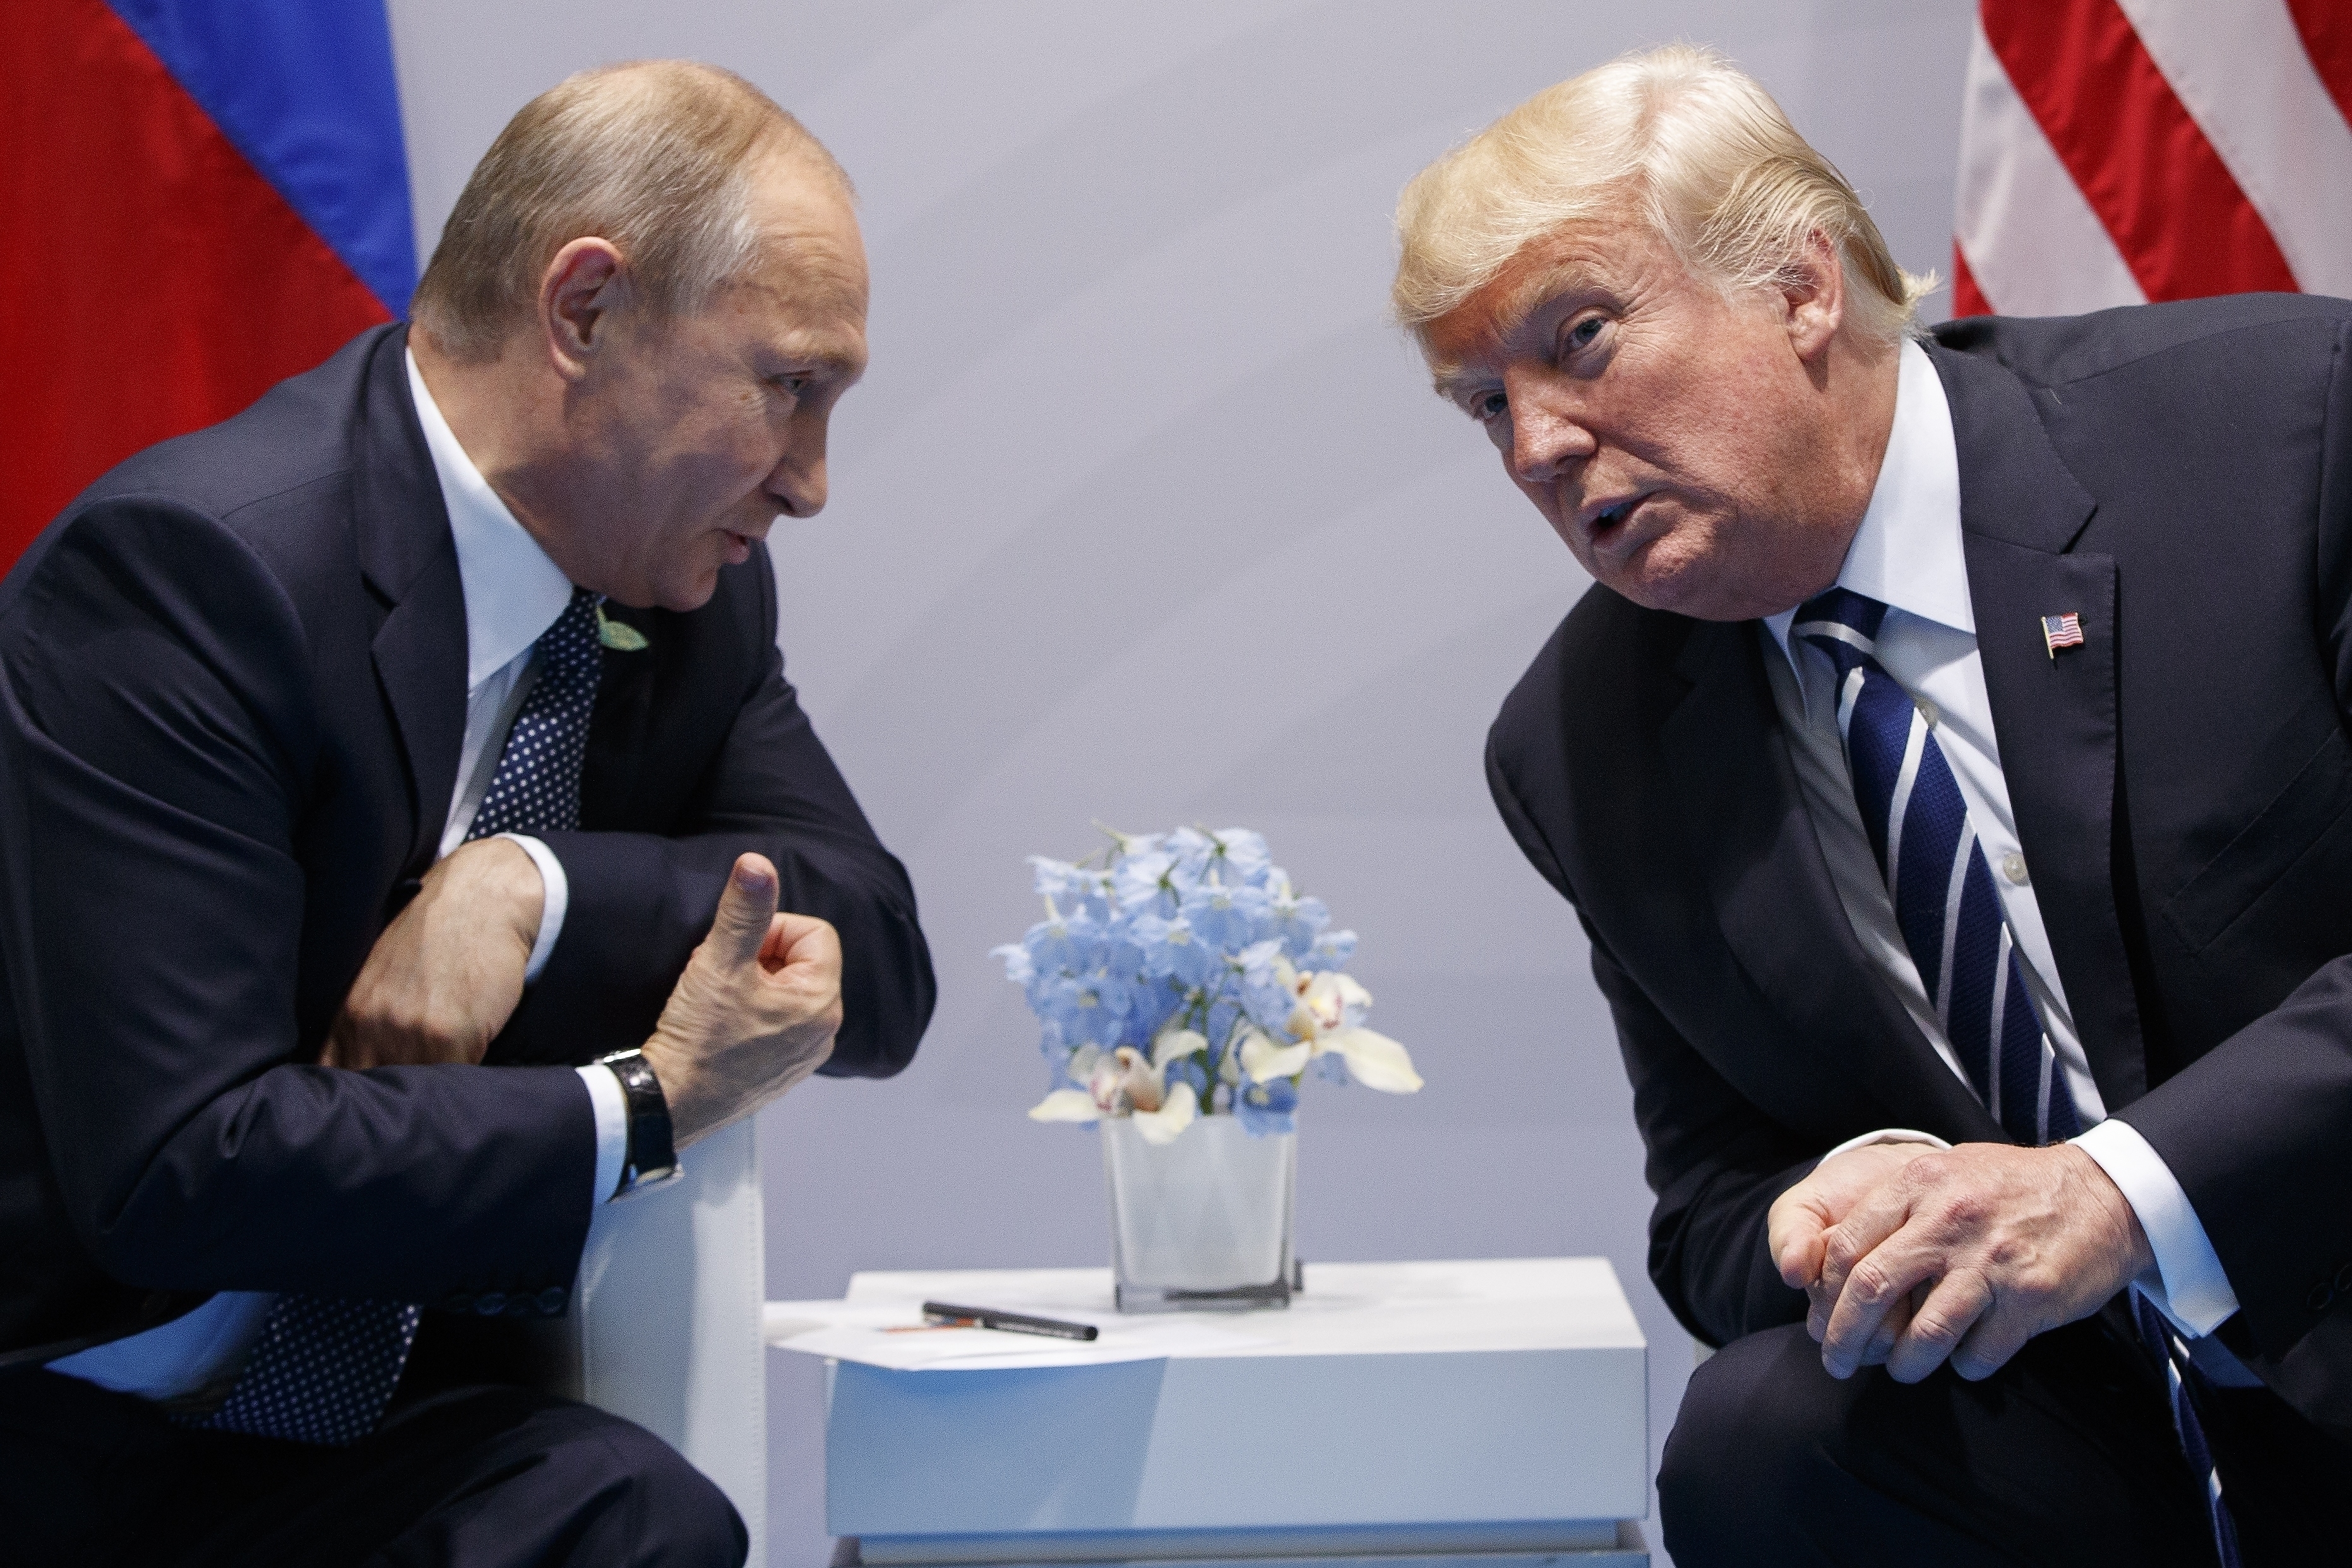 Доналд Тръмп поздрави Владимир Путин за преизбирането му и си навлече критики